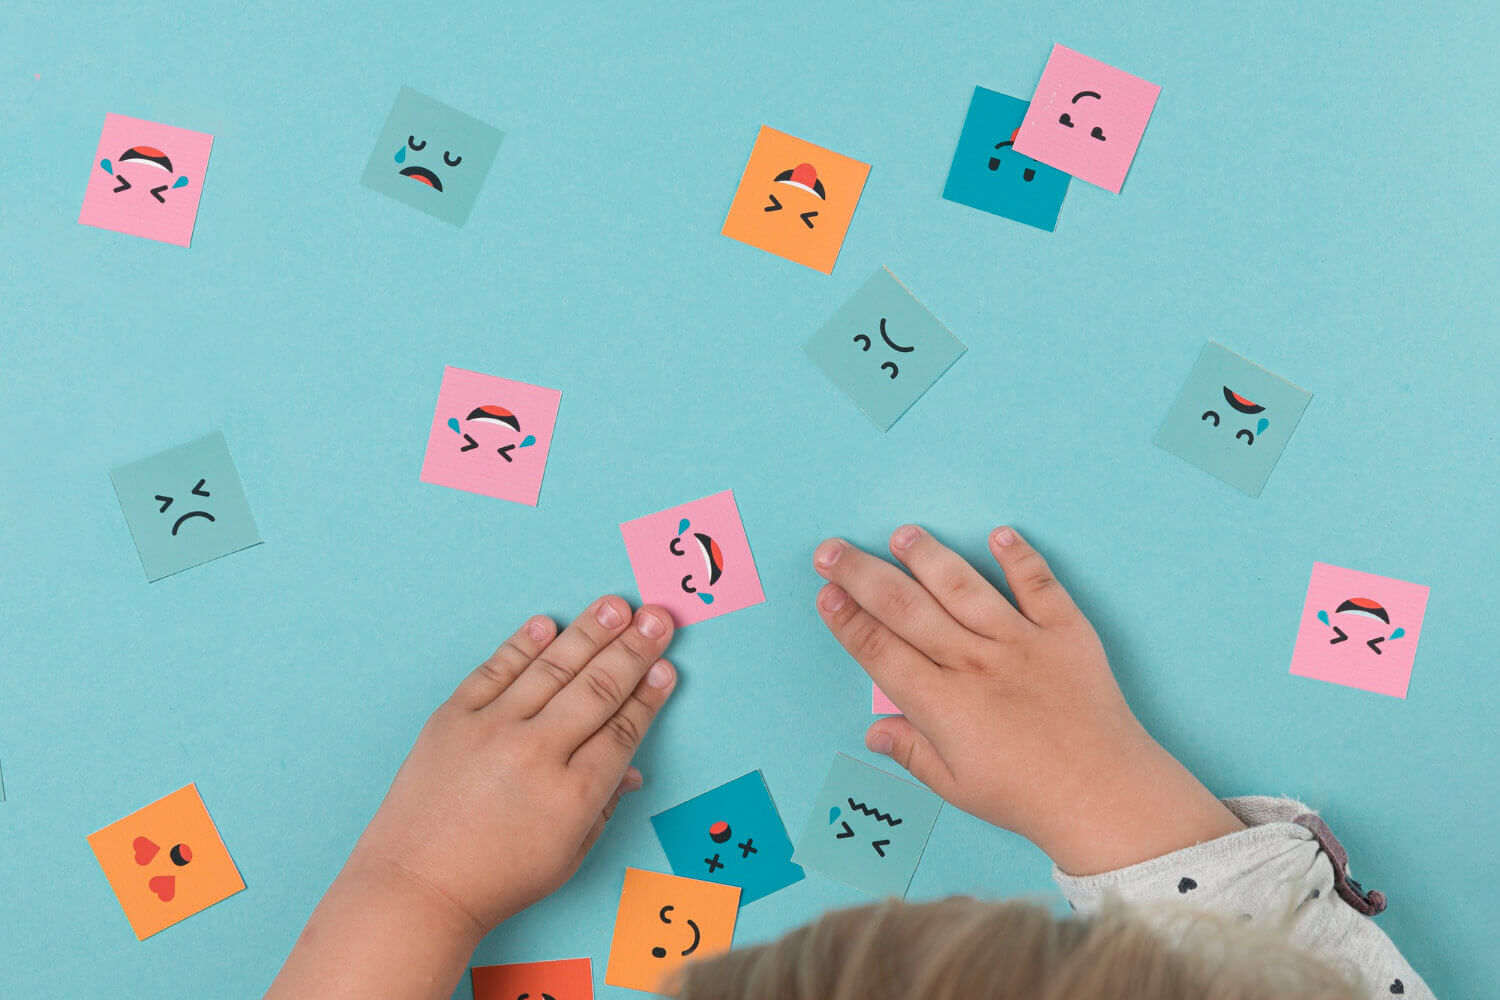 Kolorowe karteczki z różnymi minami, rączki dziecka – emocje dzieci w wieku przedszkolnym